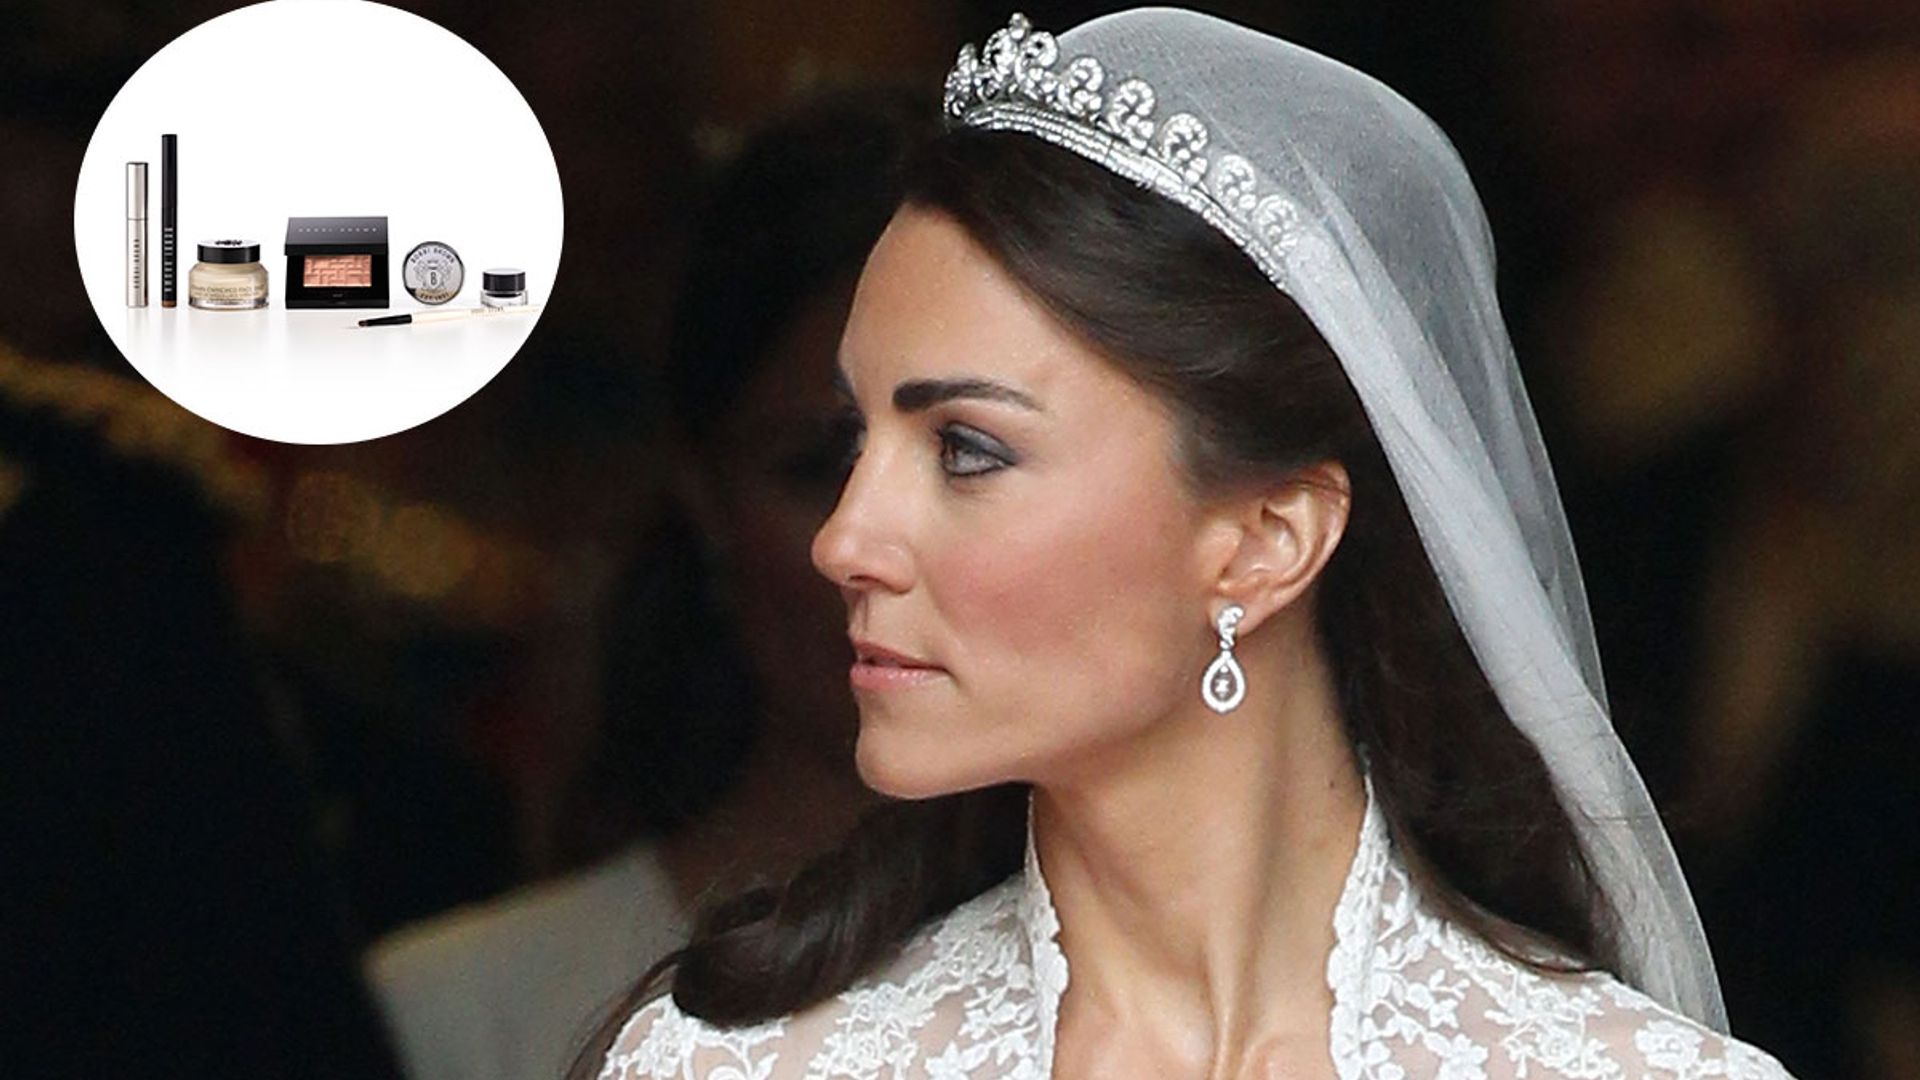 Kate Middleton's wedding makeup buys